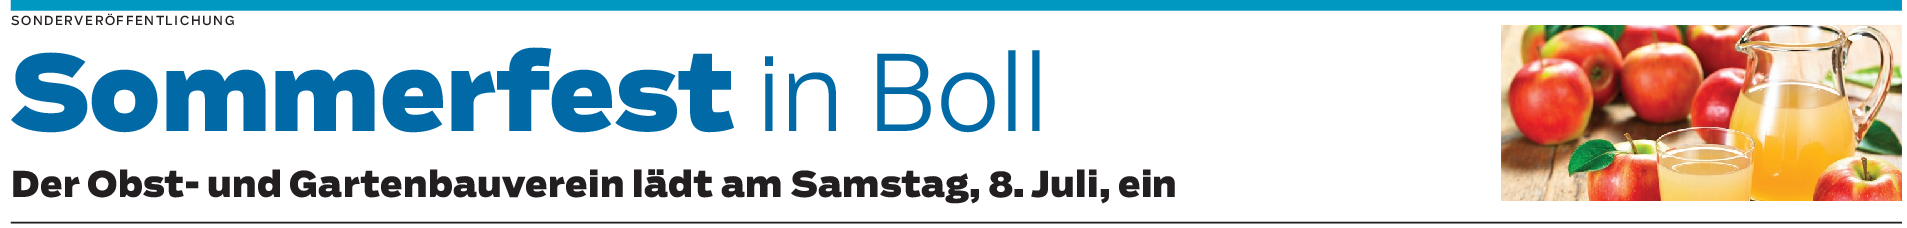 Sommerfest in Boll: Mitten im Streuobst-Idyll